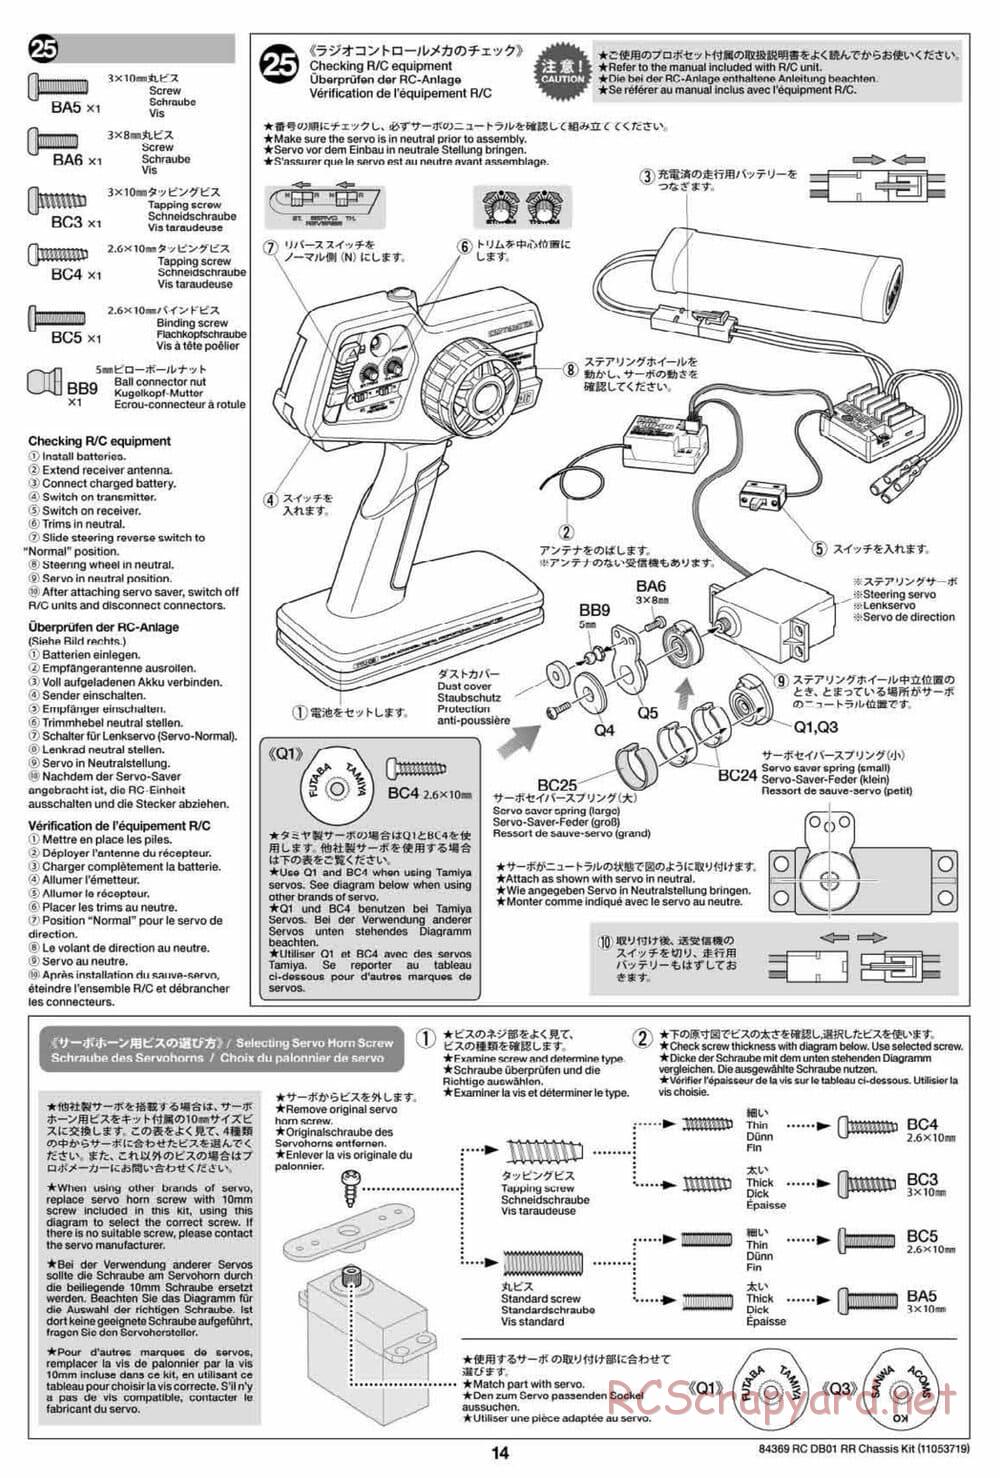 Tamiya - DB-01 RR Chassis - Manual - Page 14